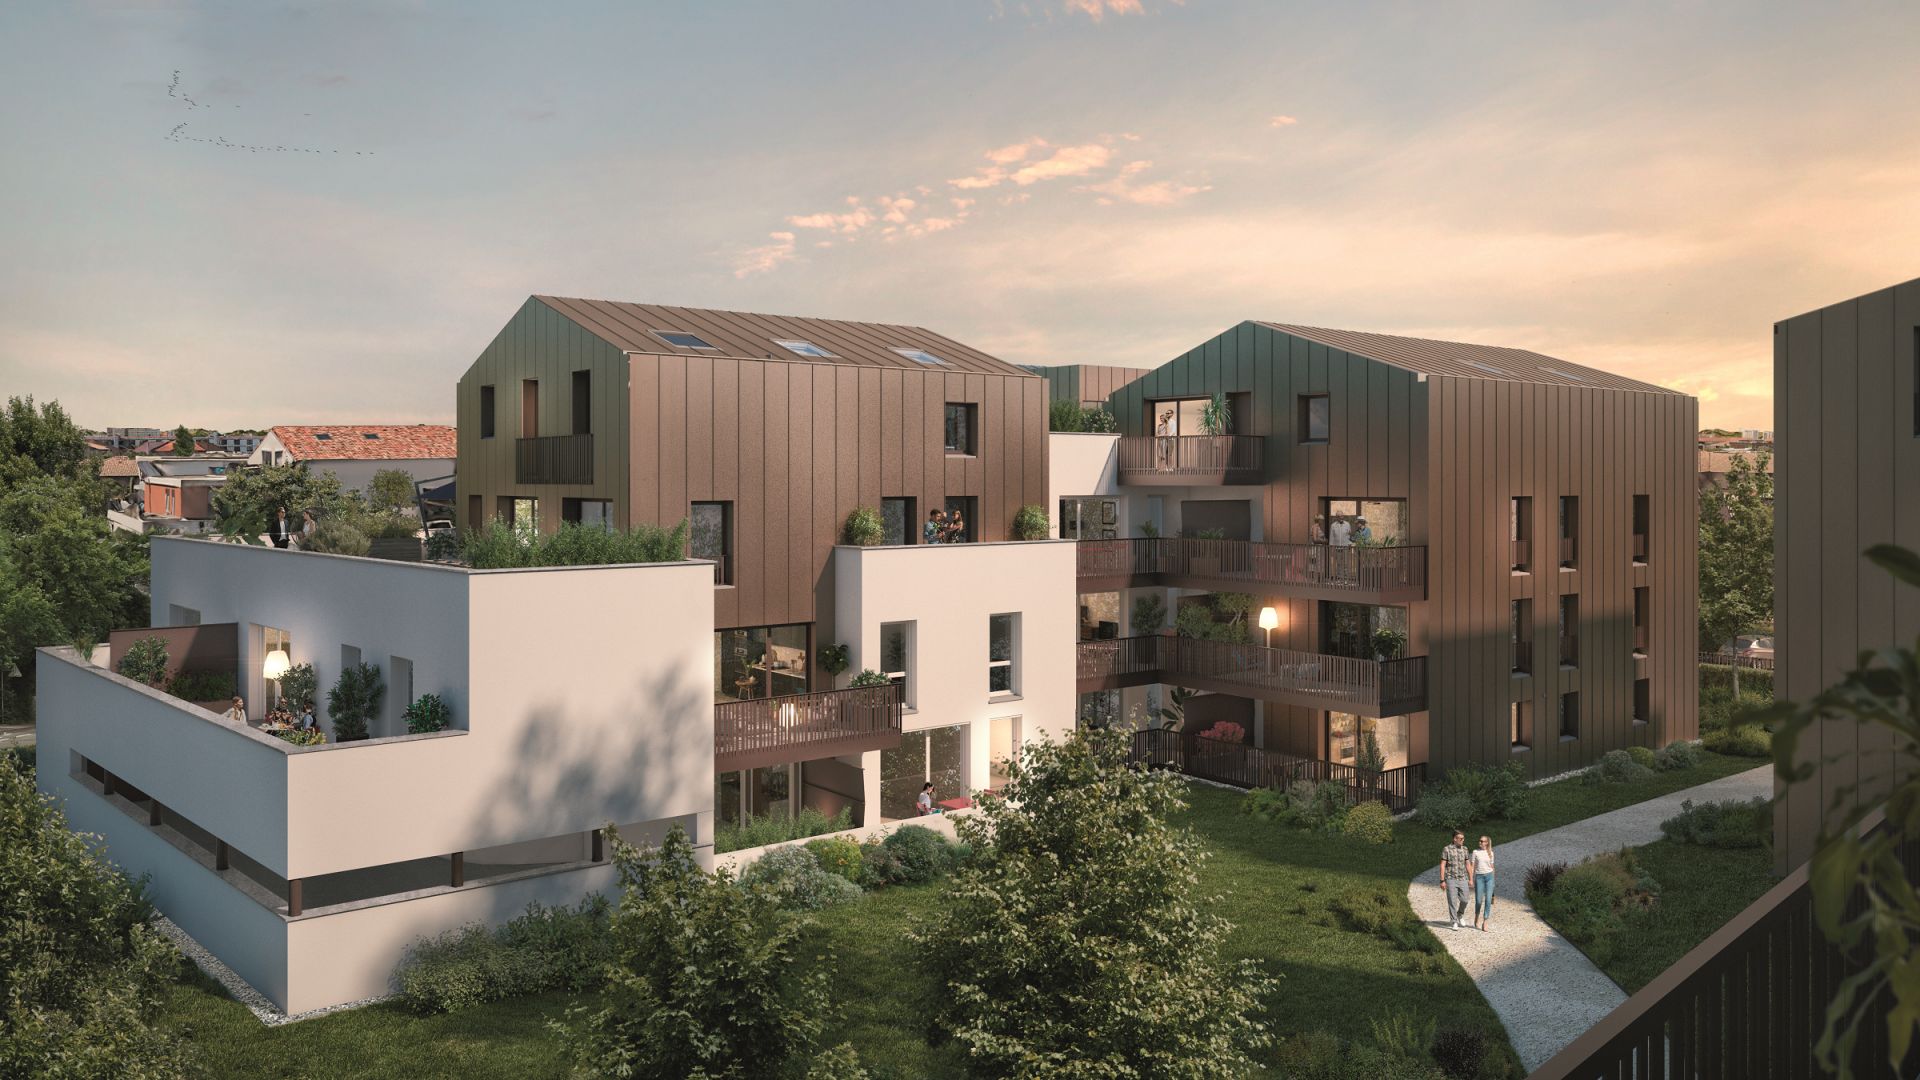 Greencity immobilier - achat appartements neufs du T2 au T4 - Résidence Open Garden - 31200 Toulouse Croix Daurade  - vue jardin